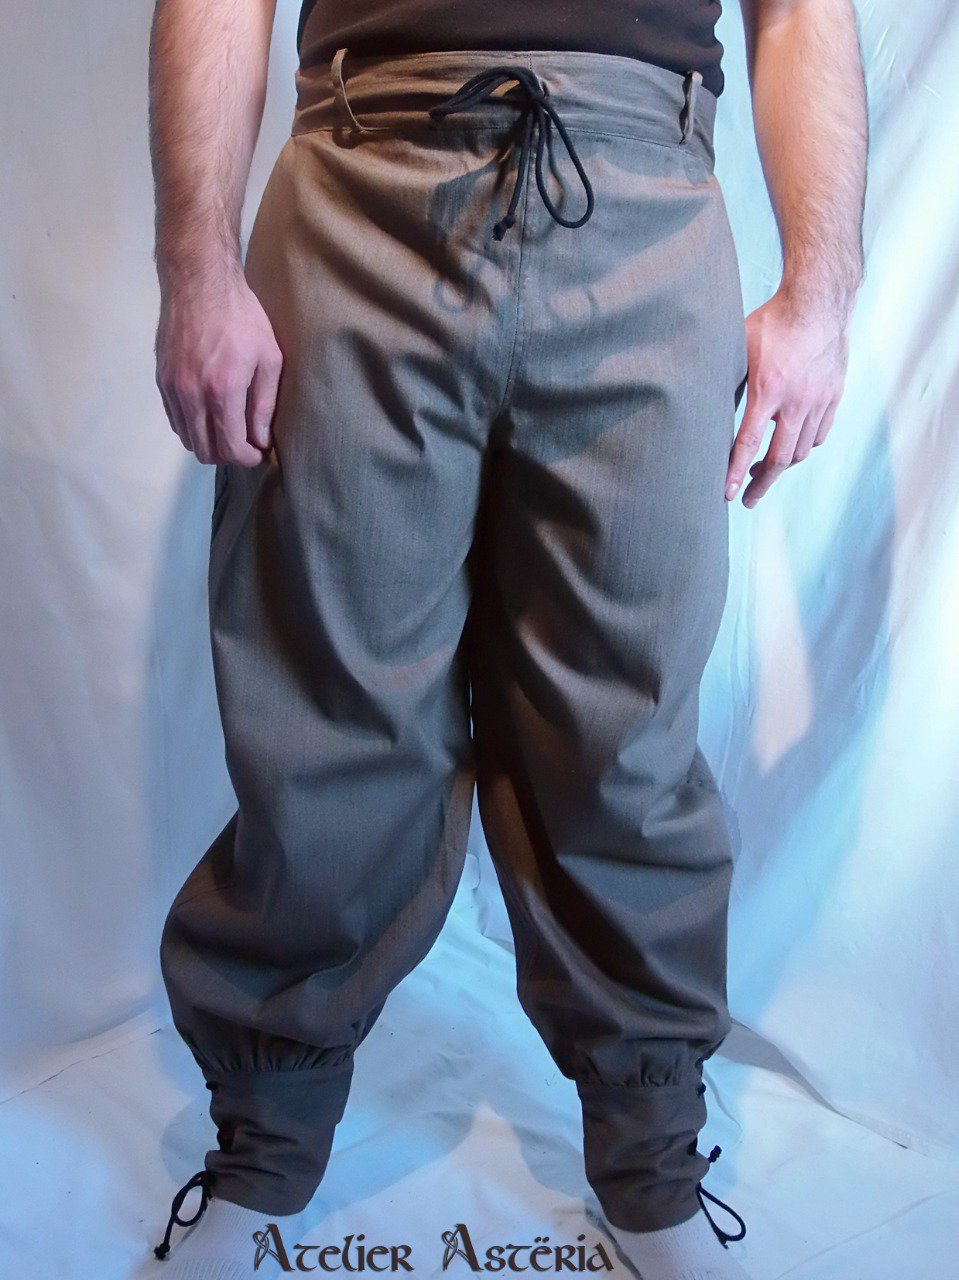 Pantalon inspiration viking médiévale / Medieval viking-inspired pants